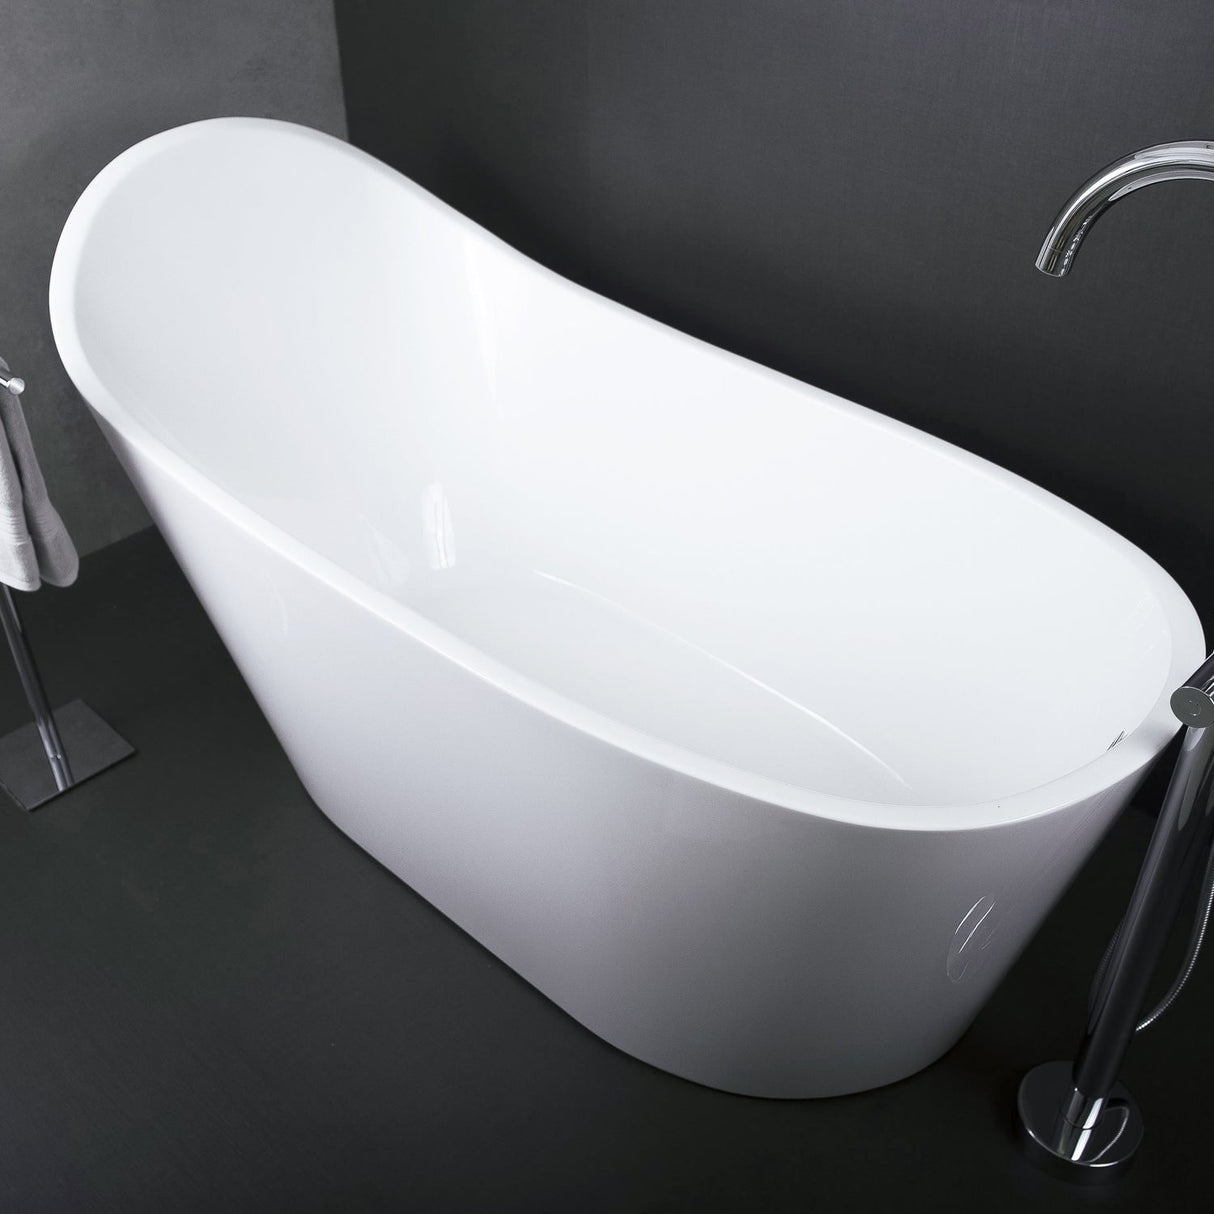 DAX Acrylic Oval High Back Freestanding Bathtub, White BT-8089